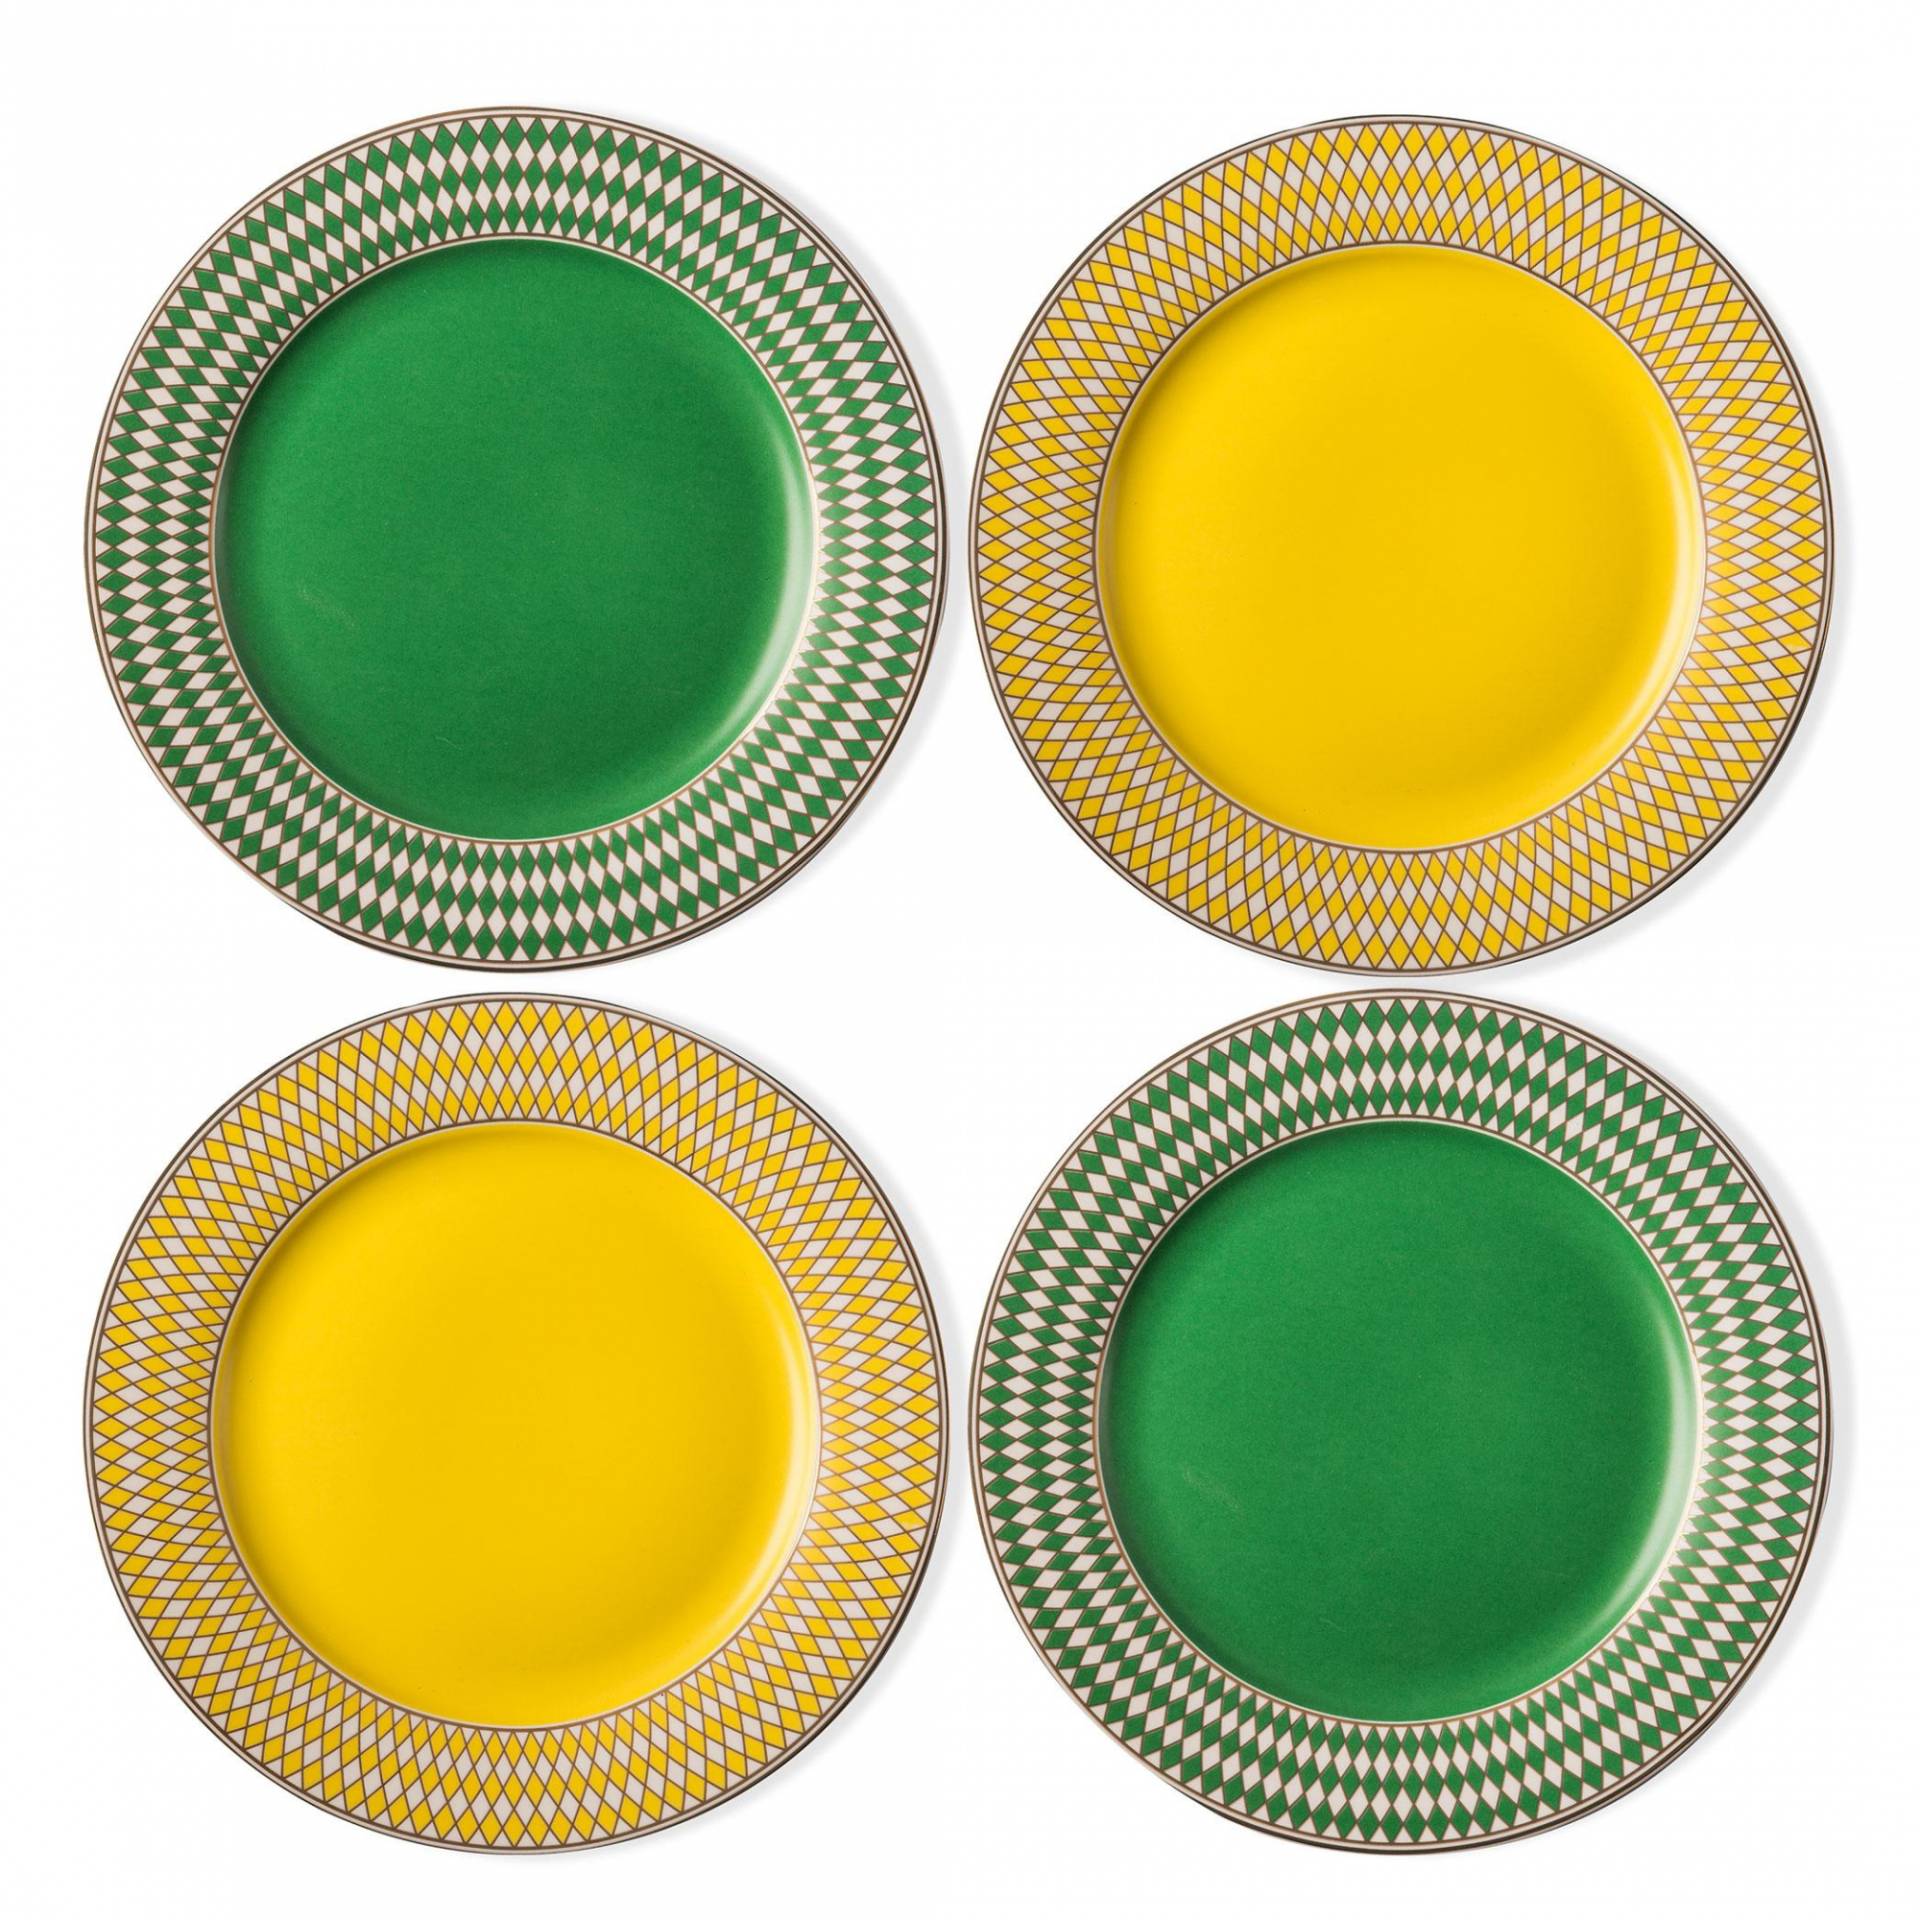 pols potten - Chess Teller 4er Set - grün, gelb, gold/matt glasiert/H x Ø 1,4x19,3cm/Mit der Hand waschen von pols potten